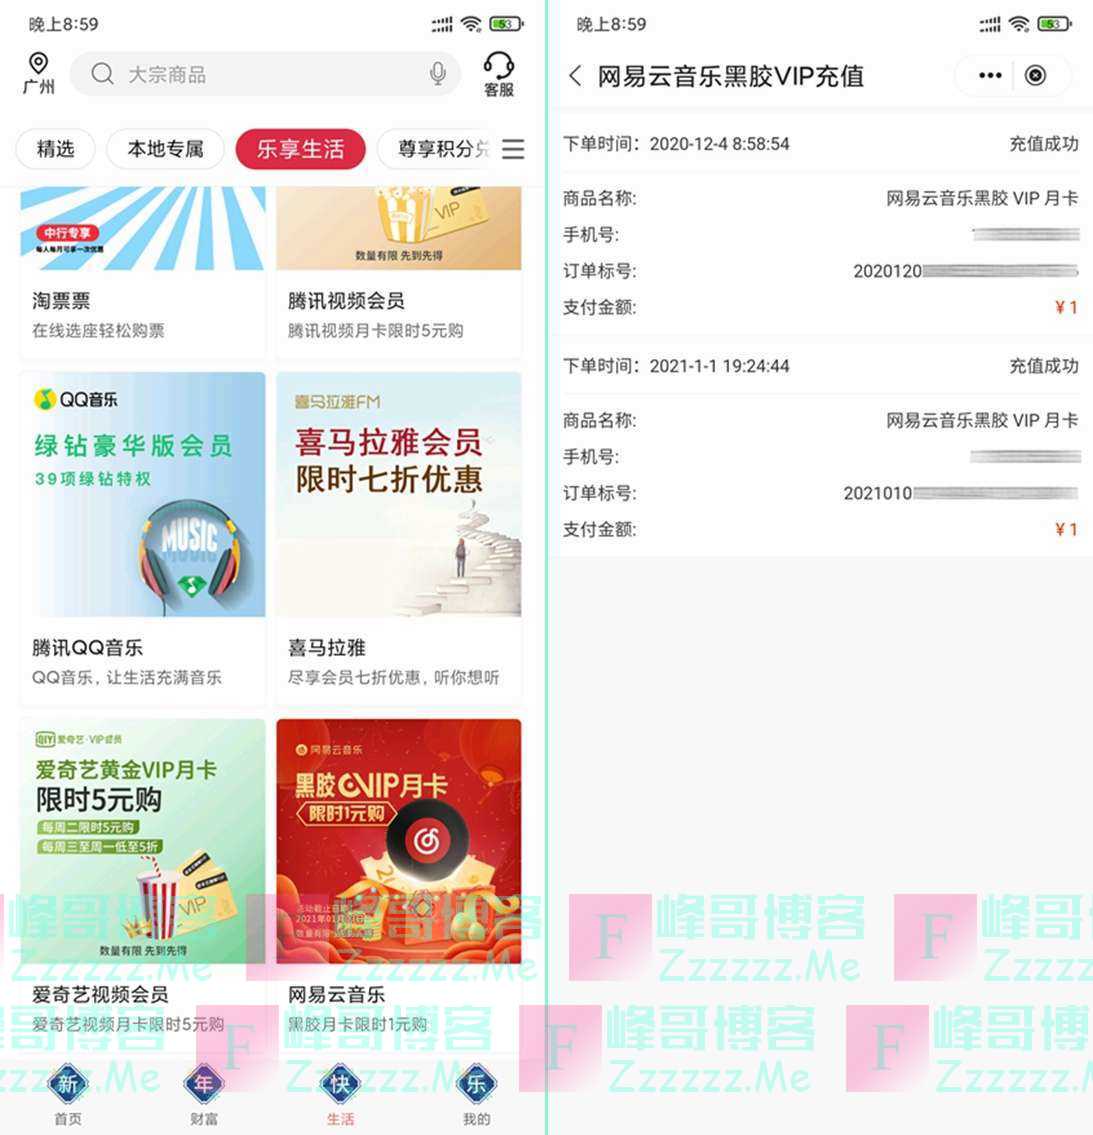 中国银行App 老用户一元购网易云音乐黑胶VIP会员